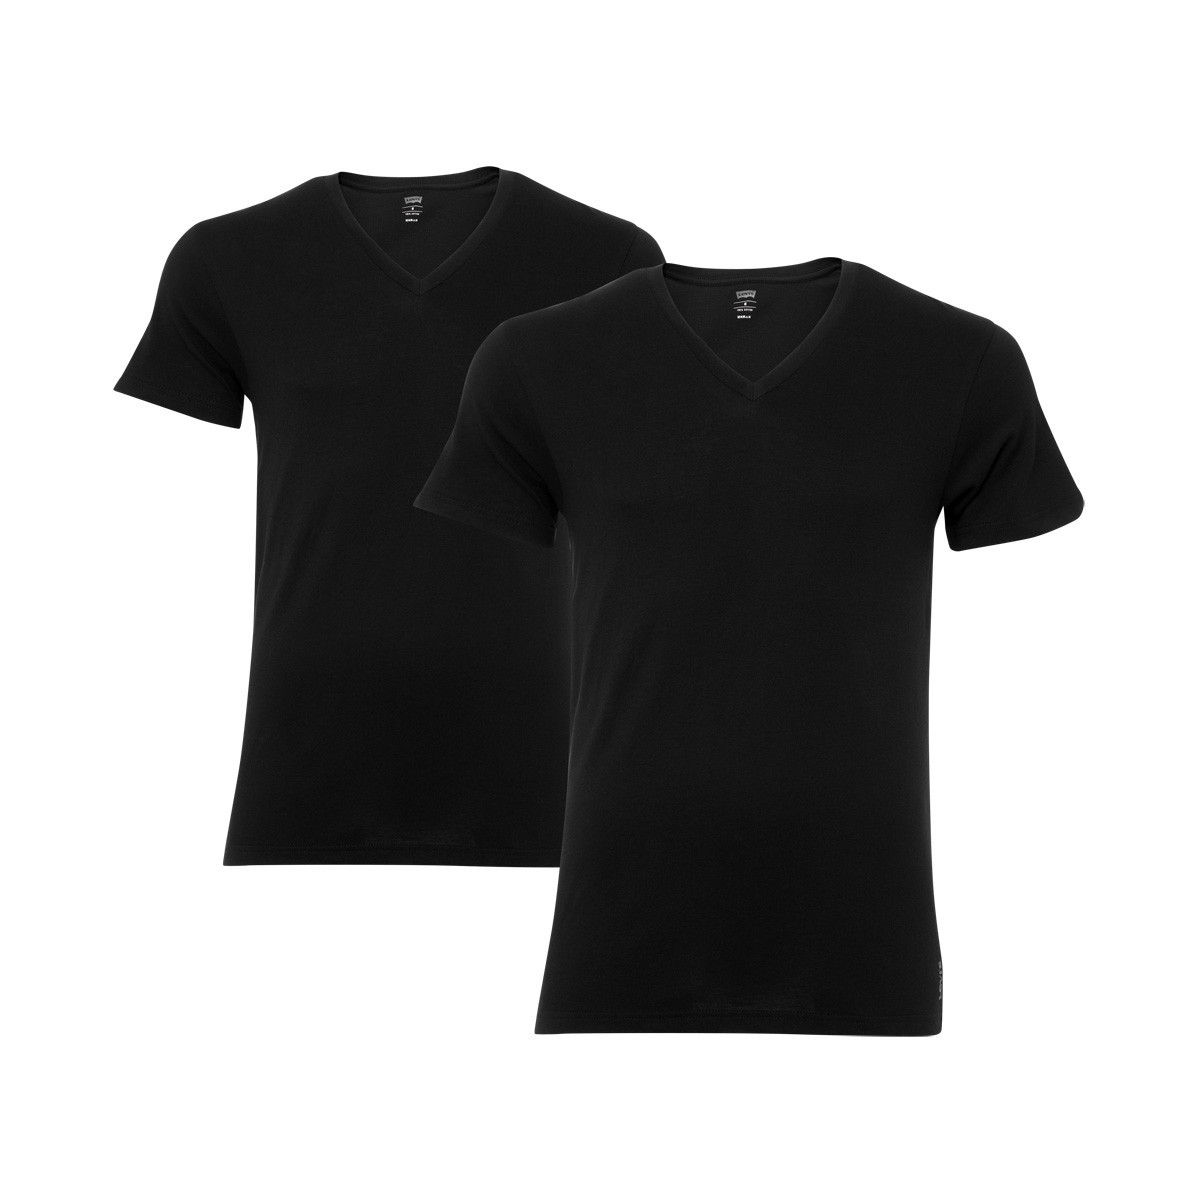 4 er Pack Levis V-Neck T-Shirt Men Herren Unterhemd V-Ausschnitt, Farbe:884 - jet black;Bekleidungsgröße:M